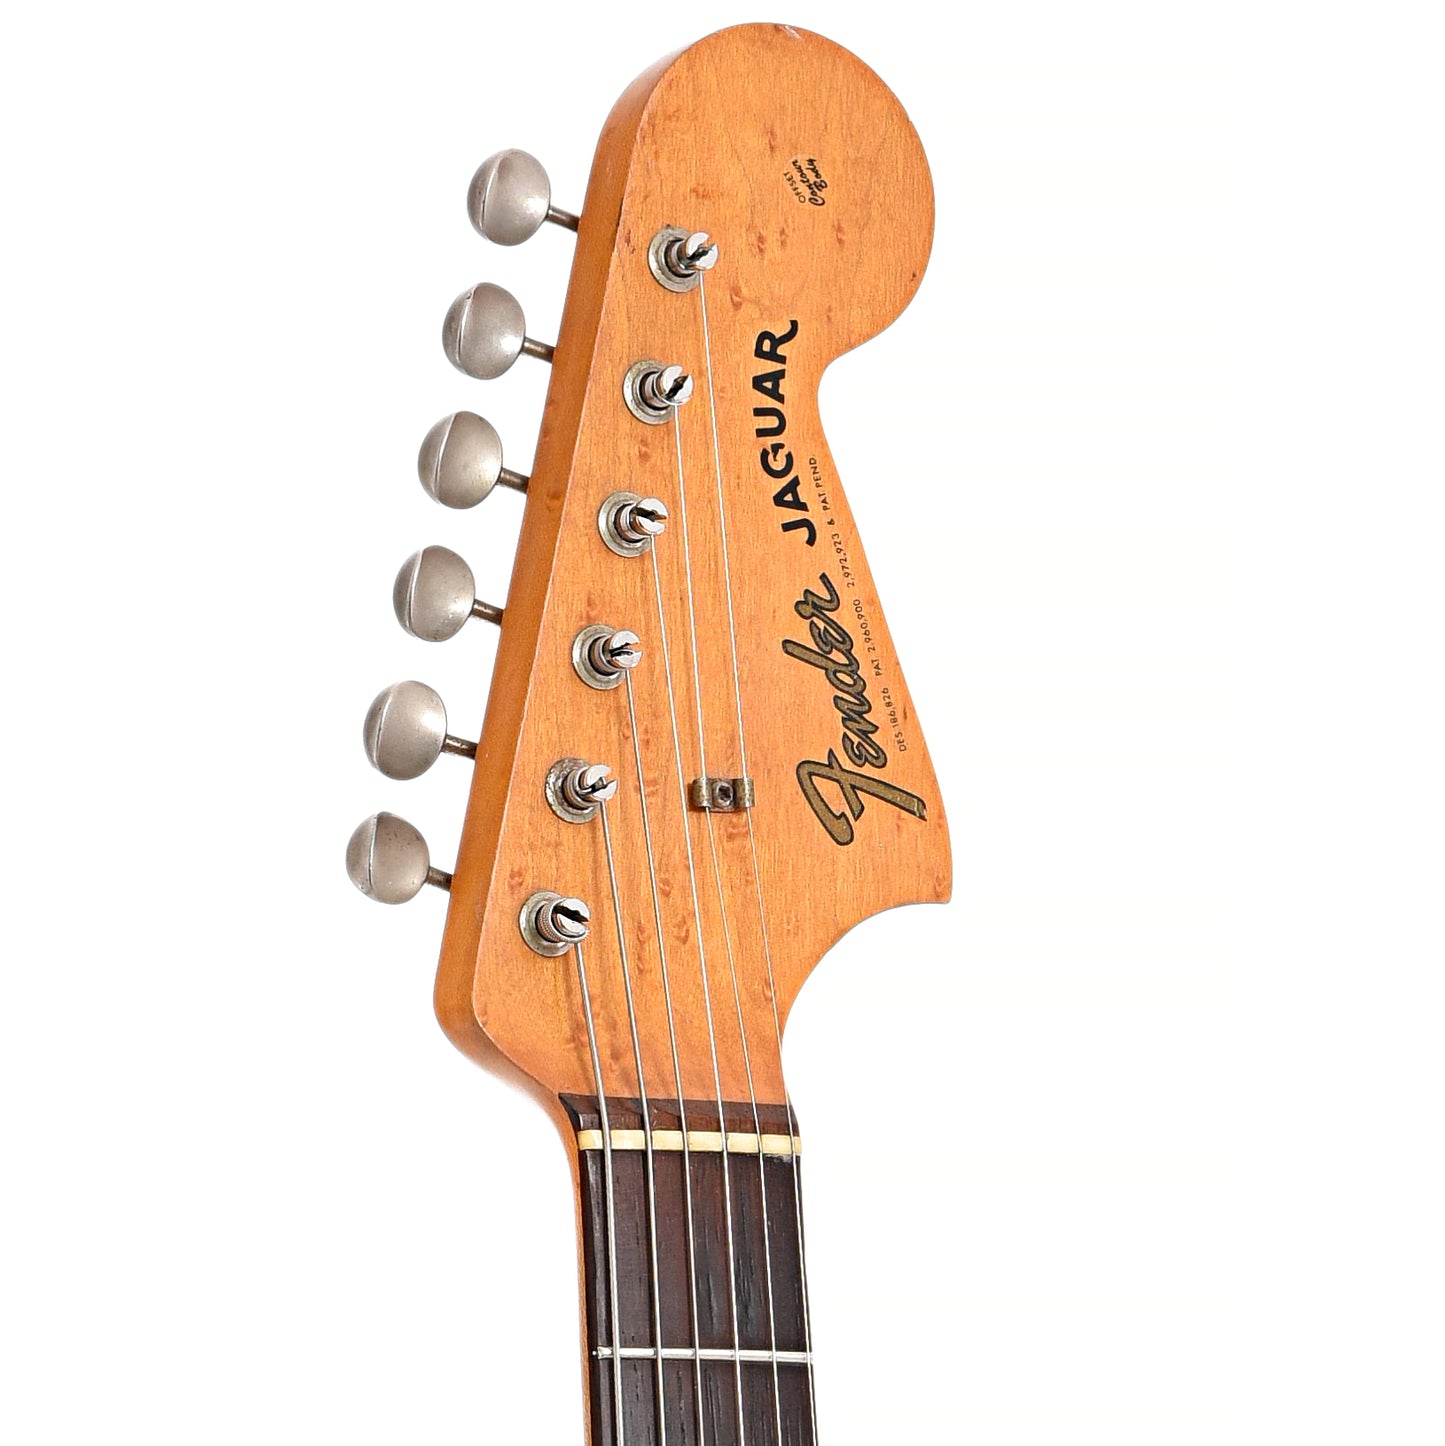 Front headstock of Fender Jaguar